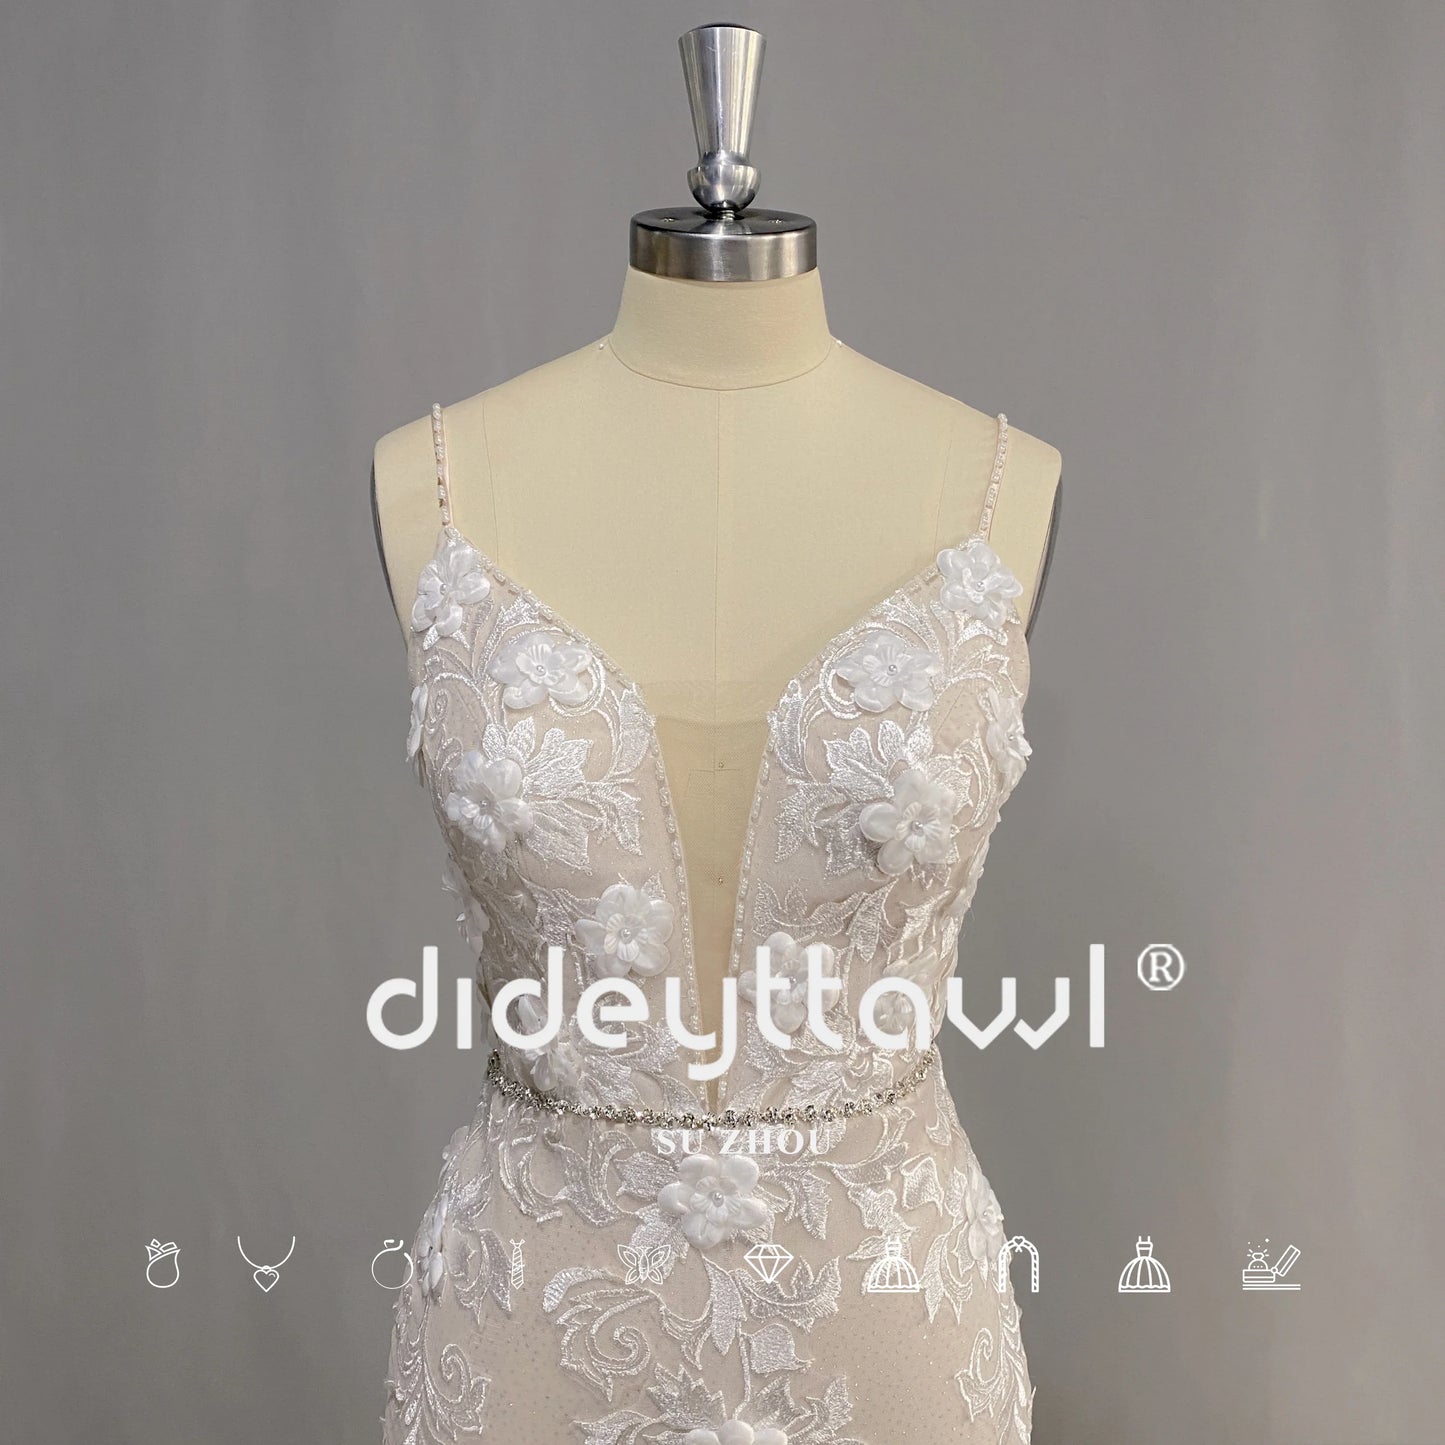 3D الزهور بلا أكمام مثير فستان الزفاف حورية البحر السباغيتي الأشرطة العميق الخامس الرقبة ثوب الزفاف عارية الذراعين